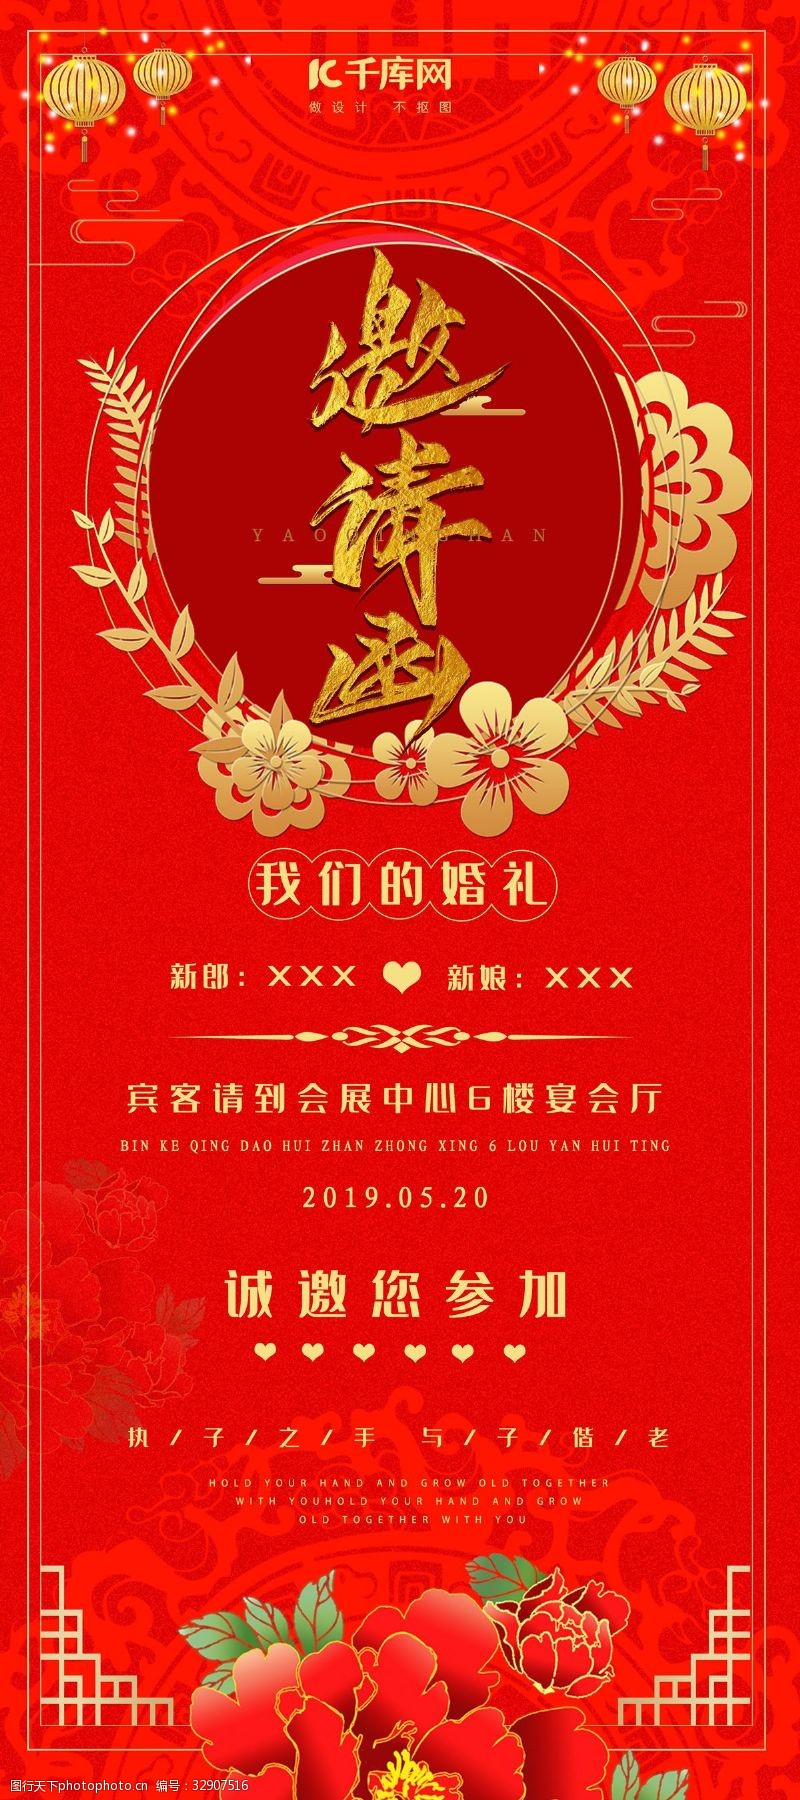 中国式婚礼邀请函宣传海报